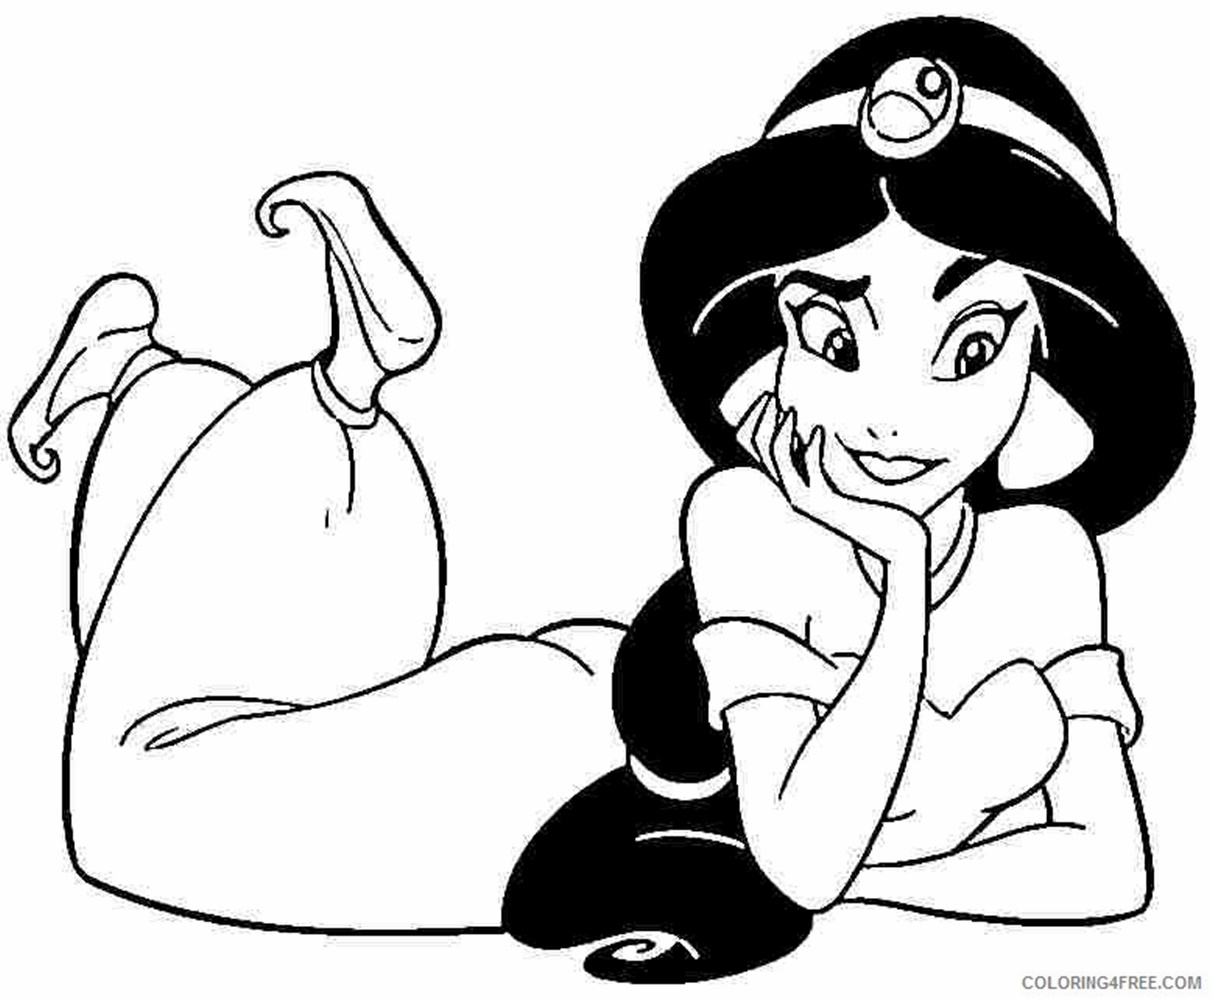 Giadinhsu.com - Tranh tô màu công chúa Jasmine - Aladdin và cây đèn thần